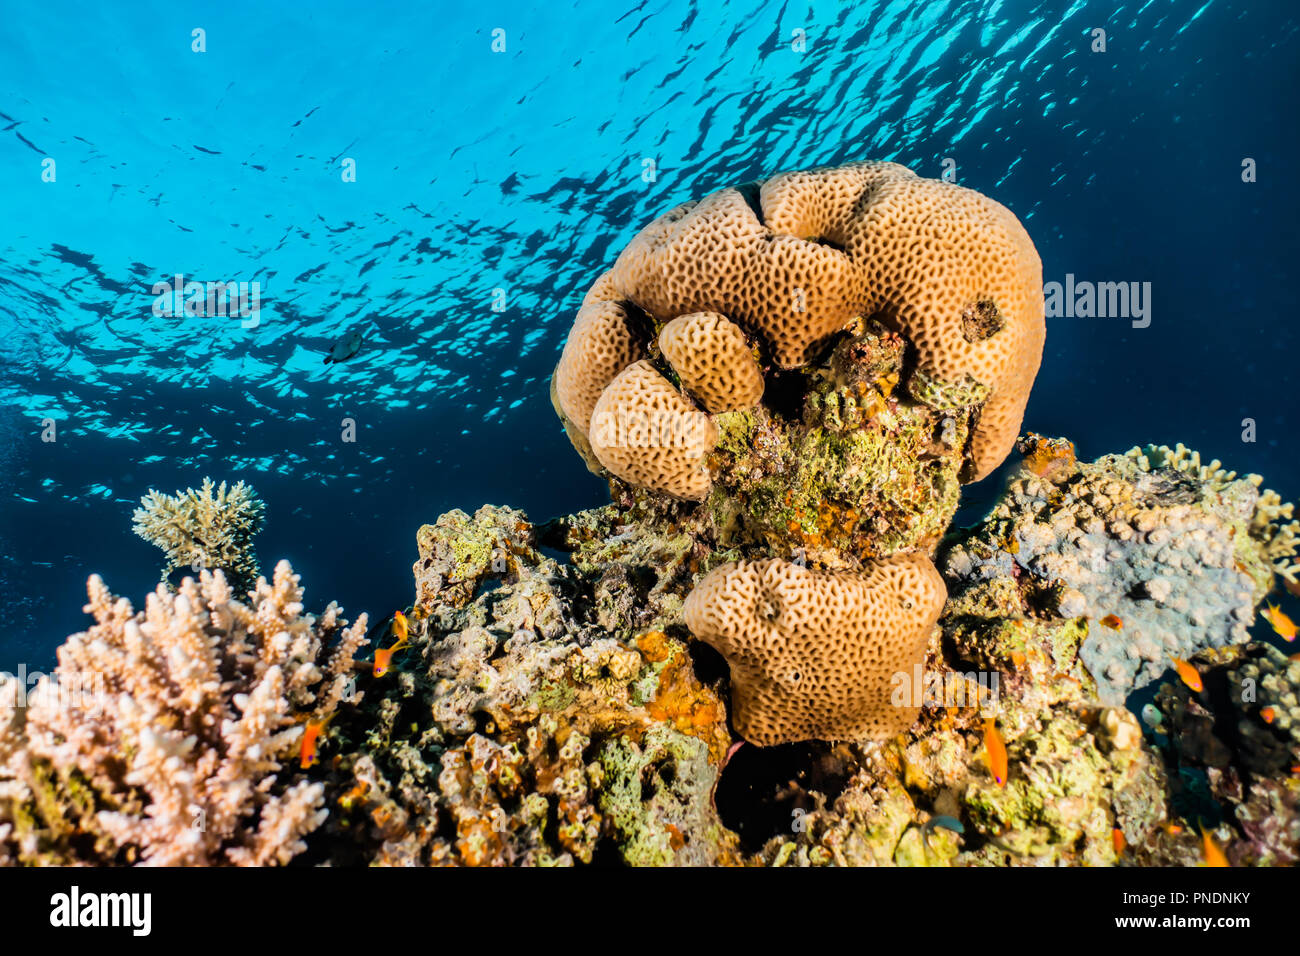 Los arrecifes de coral y las plantas acuáticas en el Mar Rojo, colorido y lleno de diferentes colores Foto de stock